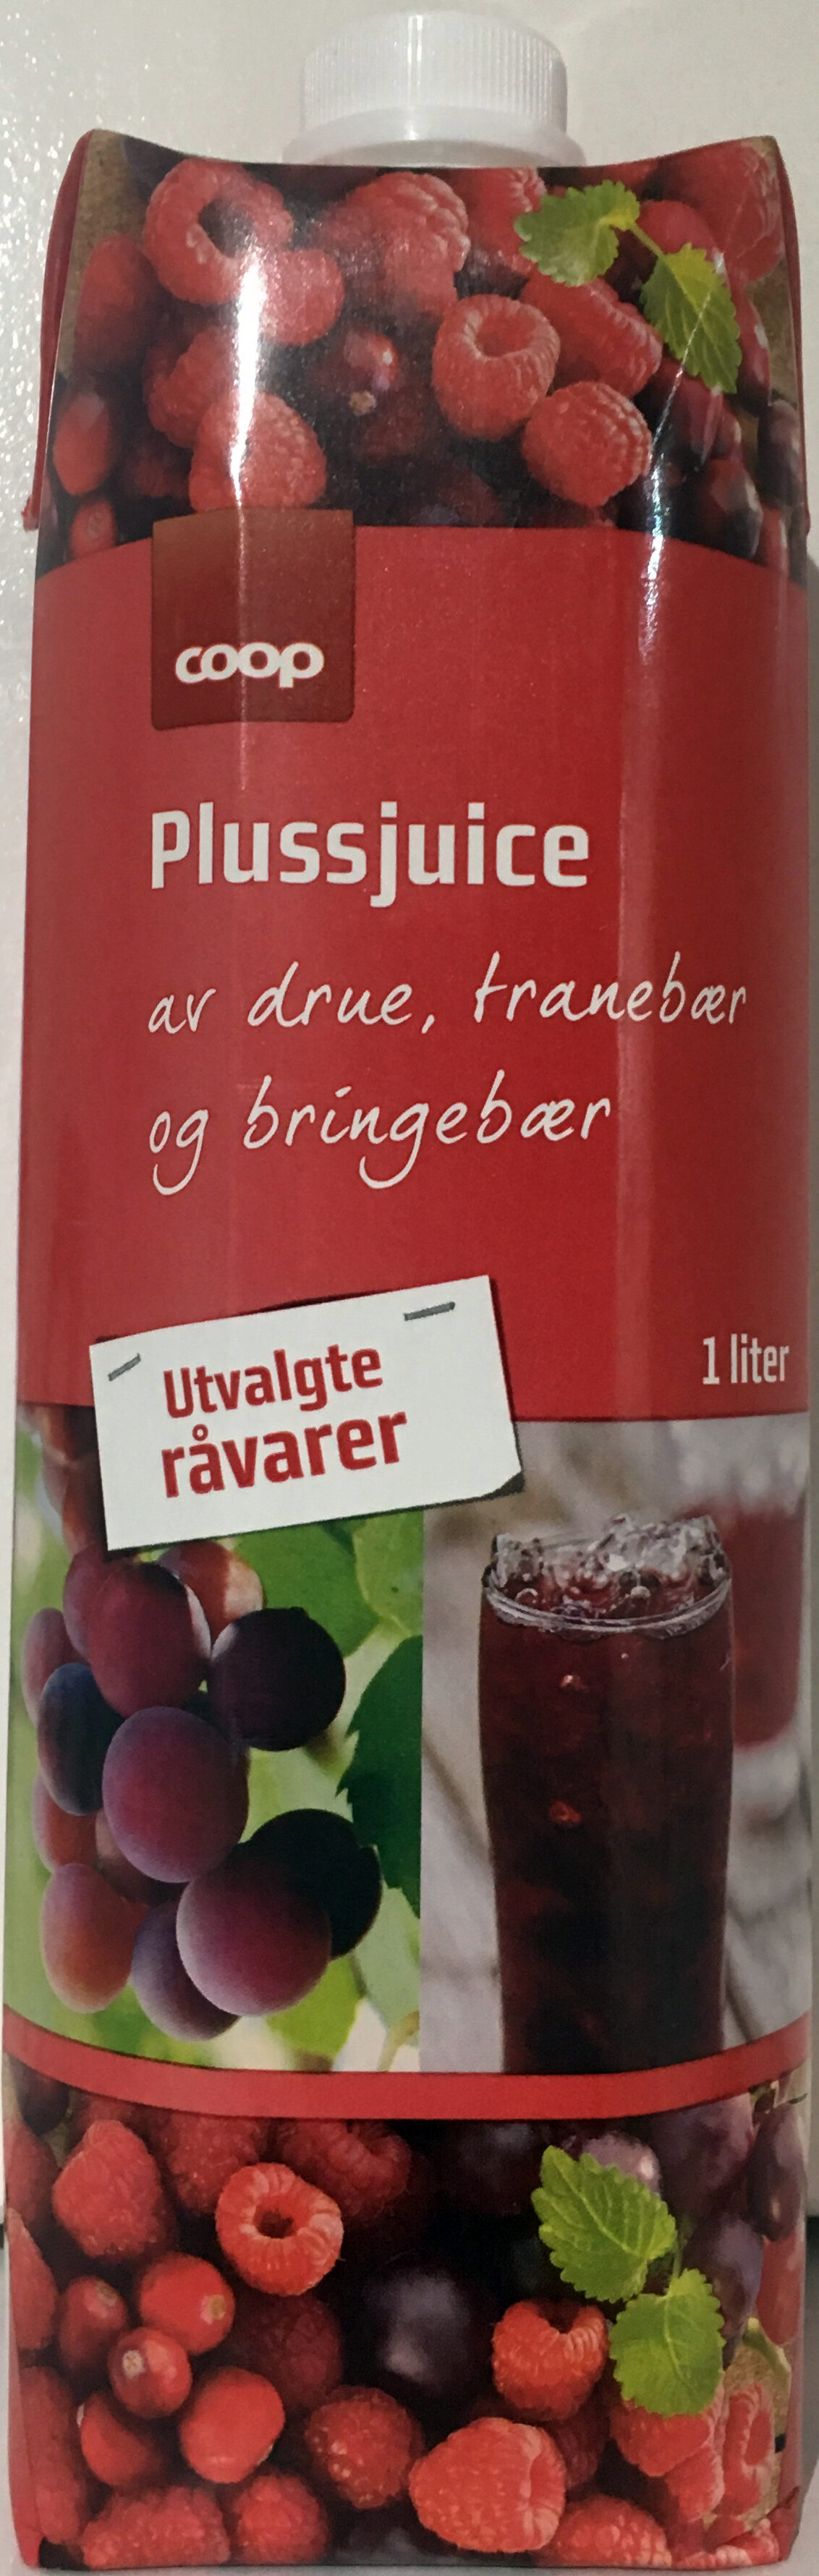 Plussjuice av drue, tranebær og bringebær - Product - nb